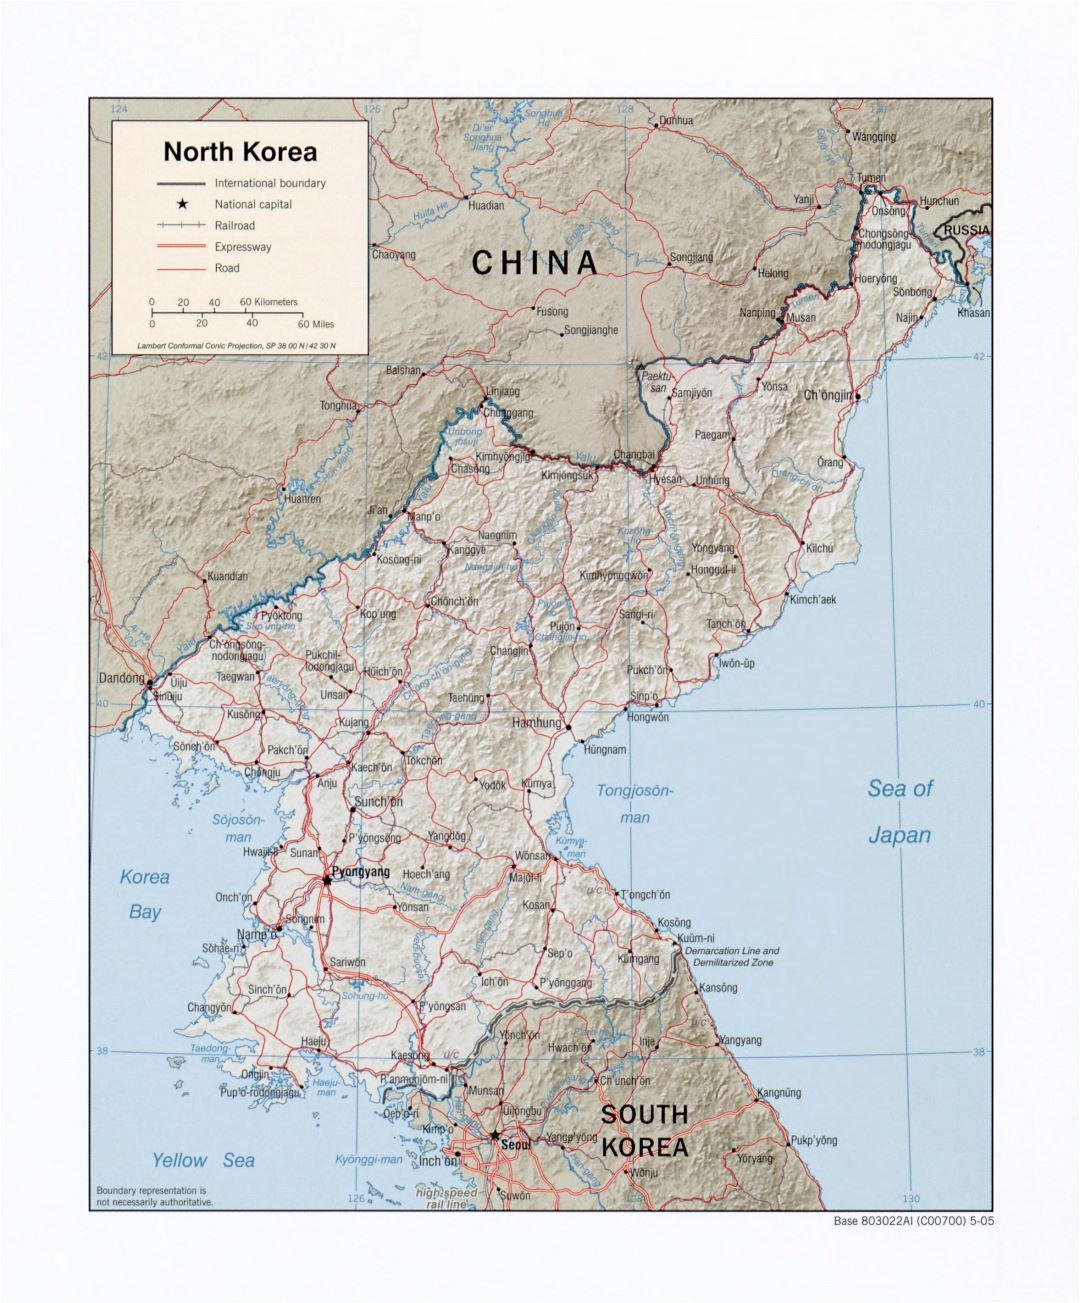 Grande detallado mapa político de Corea del Norte con socorro, carreteras, ferrocarriles y principales ciudades - 2005